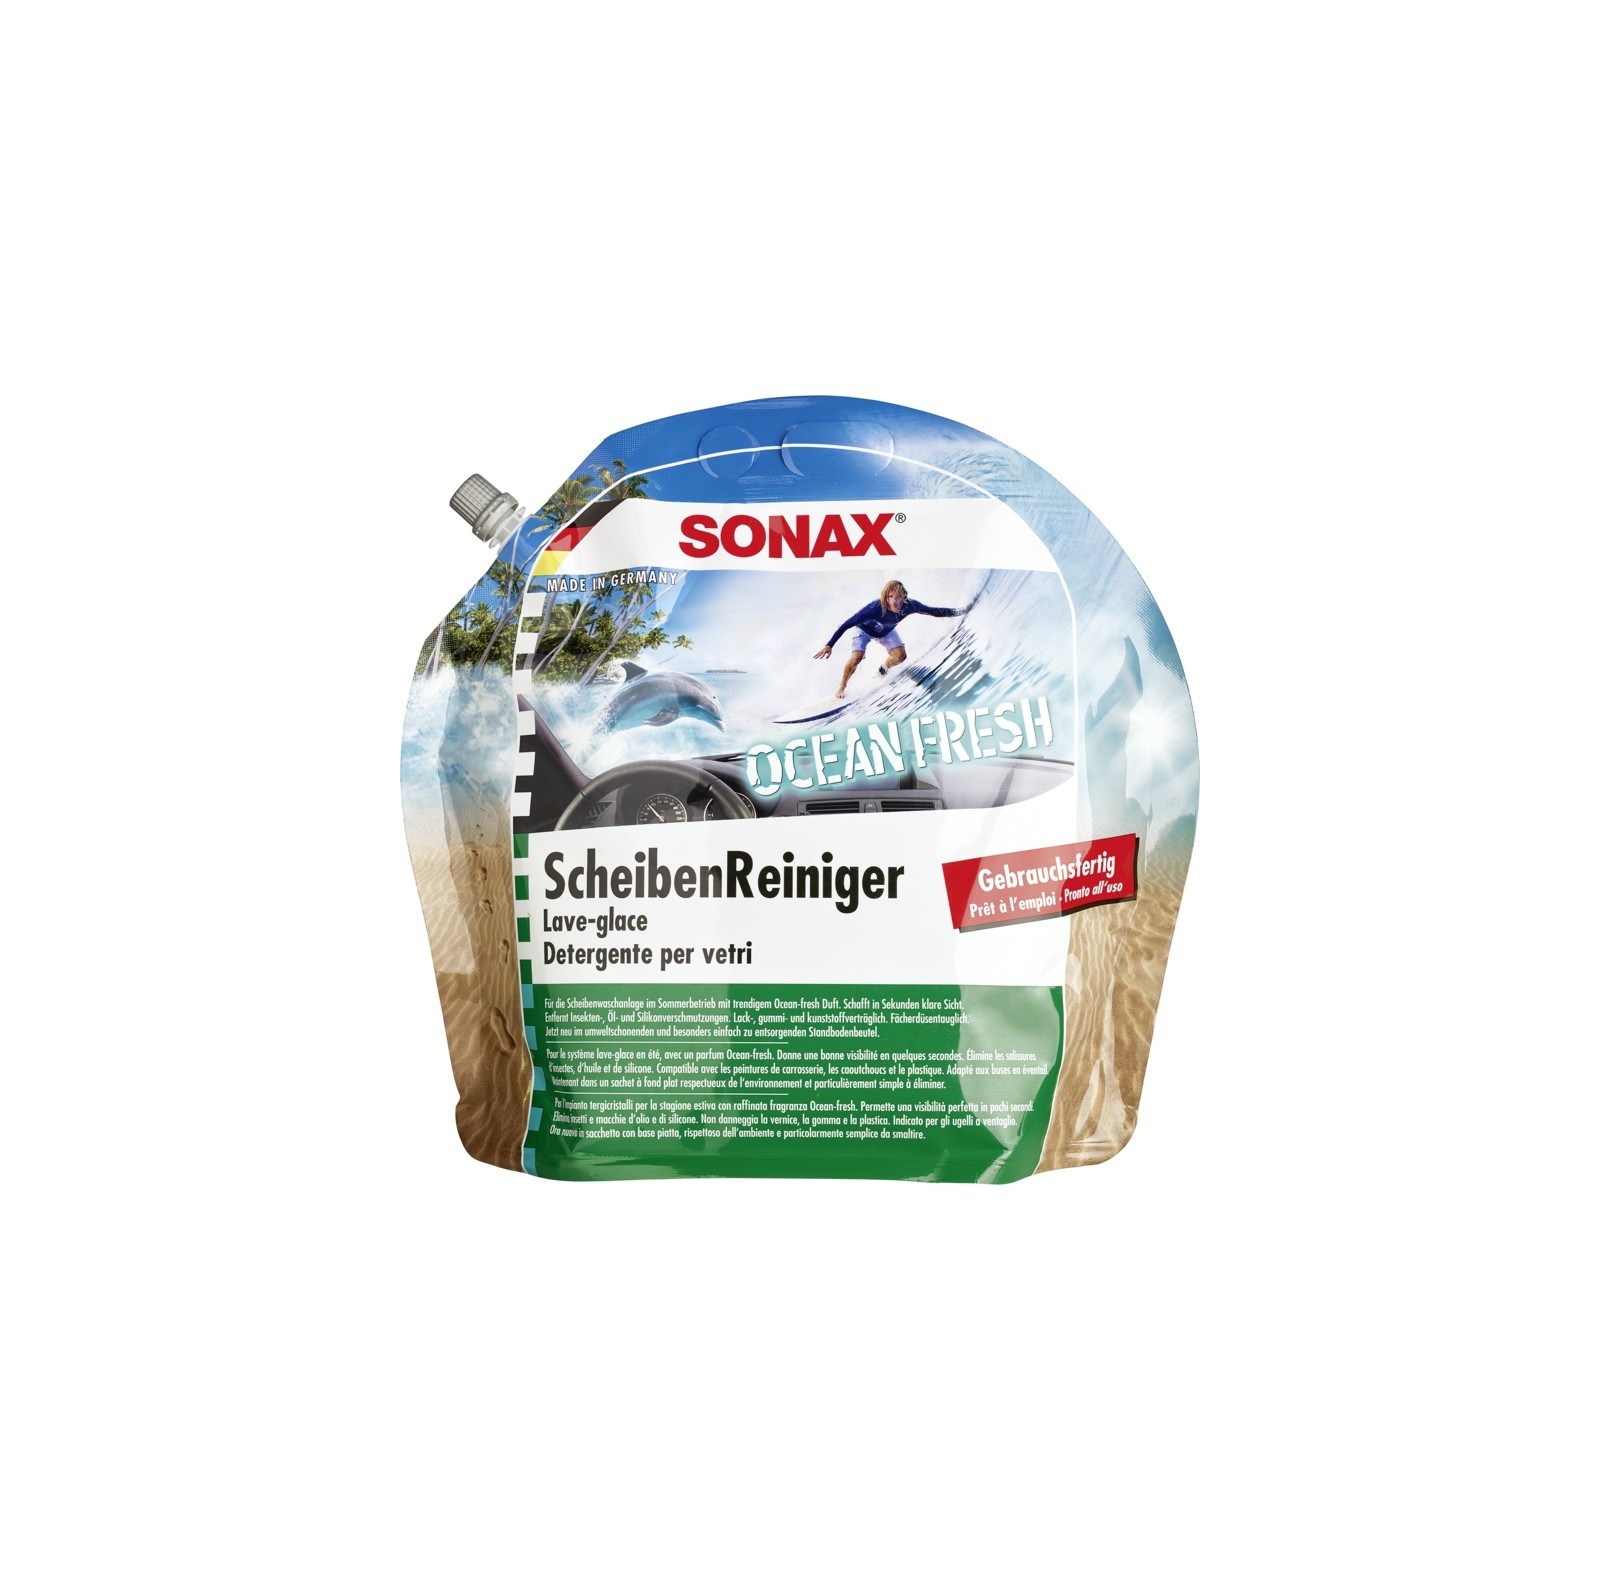 SONAX ScheibenReiniger gebrauchsfertig Ocean-Fresh  3 l, Art.-Nr. 03884410